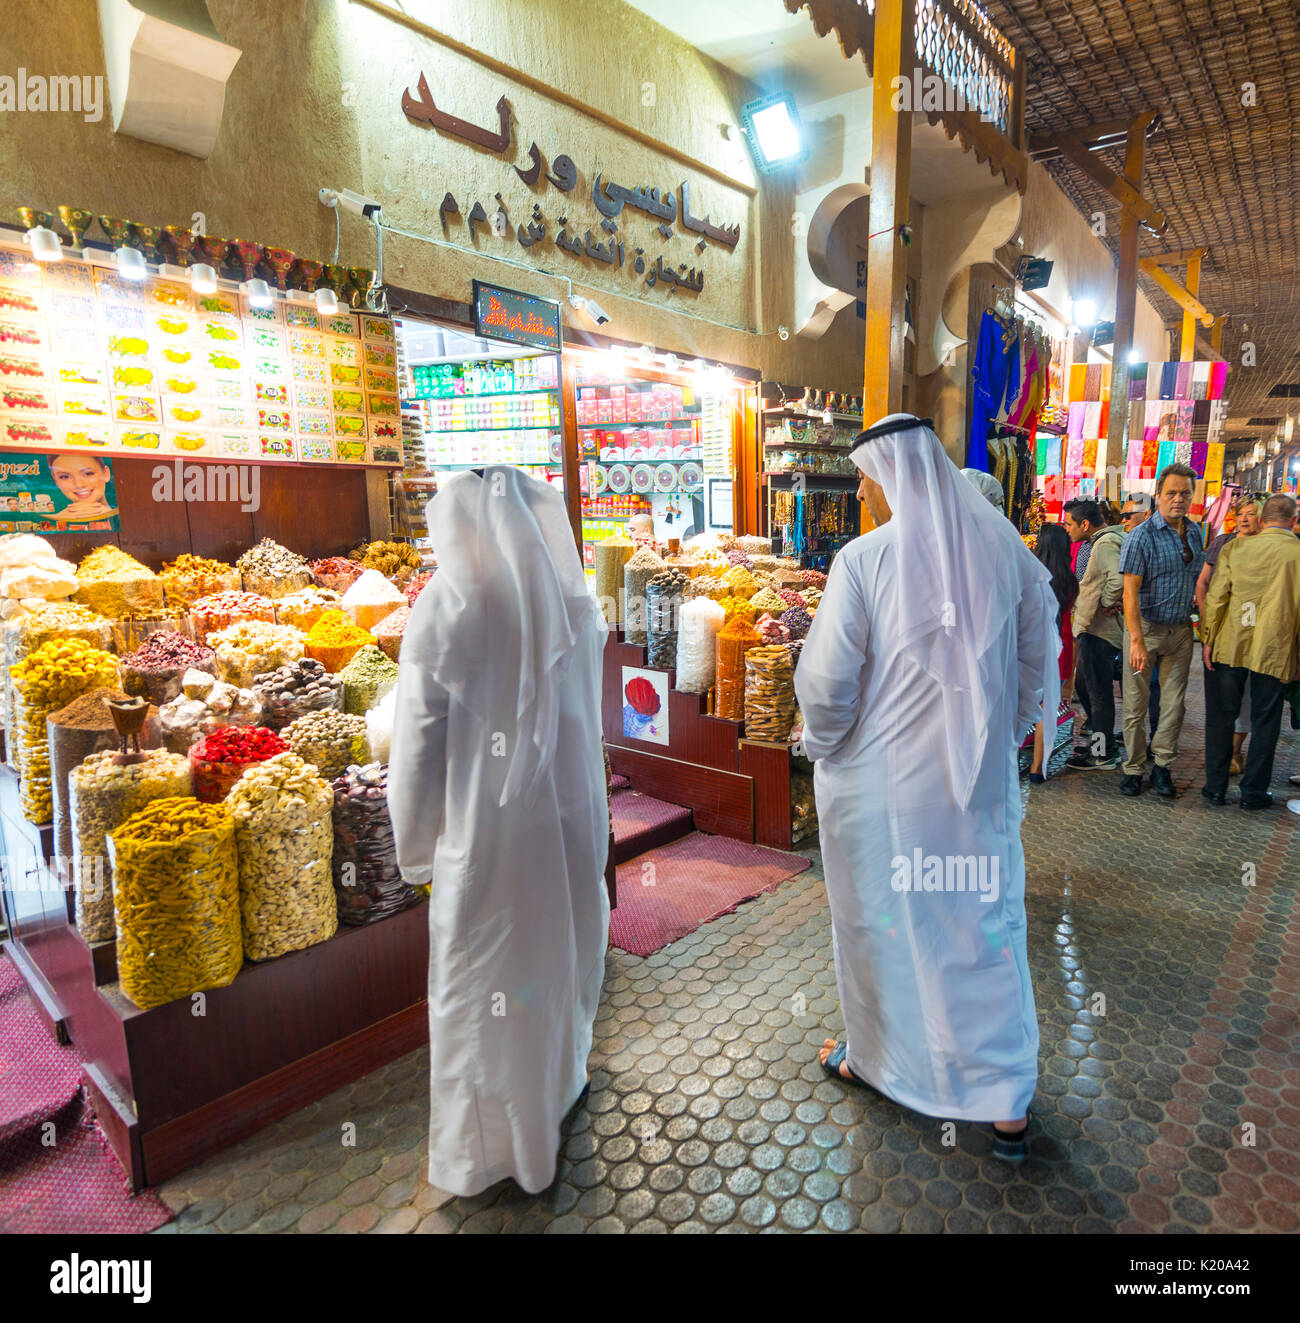 Zwei Araber in weißen Gewändern, Thawb, Gewürze auf einem arabischen Markt, Dubai Spice Souk, Alter Markt, Alte Dubai, Dubai, Vereinigte Arabische Emirate Stockfoto